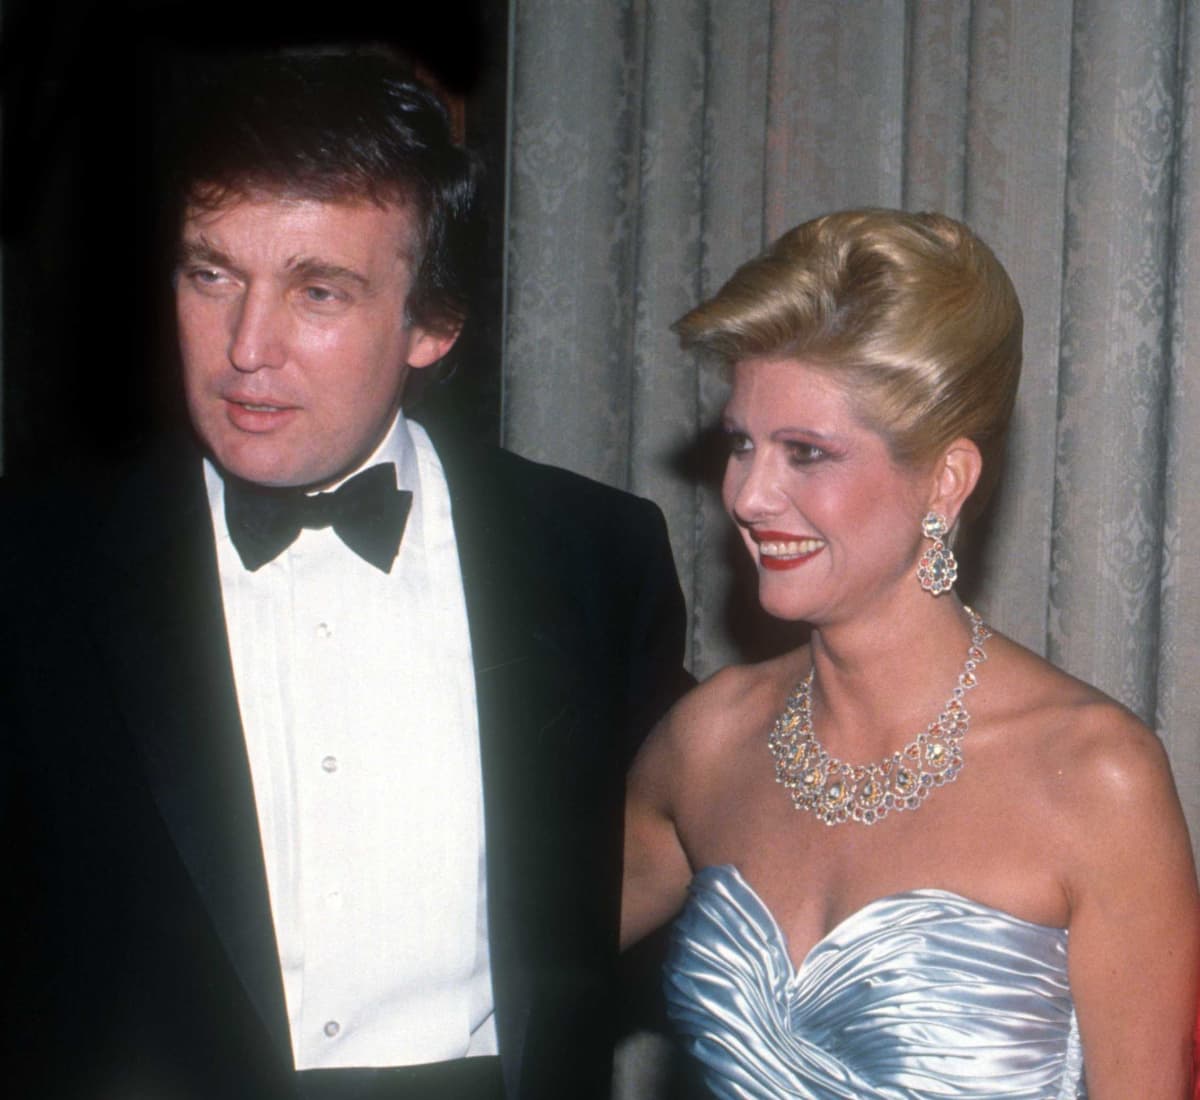 Donald ja Ivana Trump juhla-asuissa. Donaldilla on smokki ja Ivanalla siniharmaa iltapuku ja suuret korut.